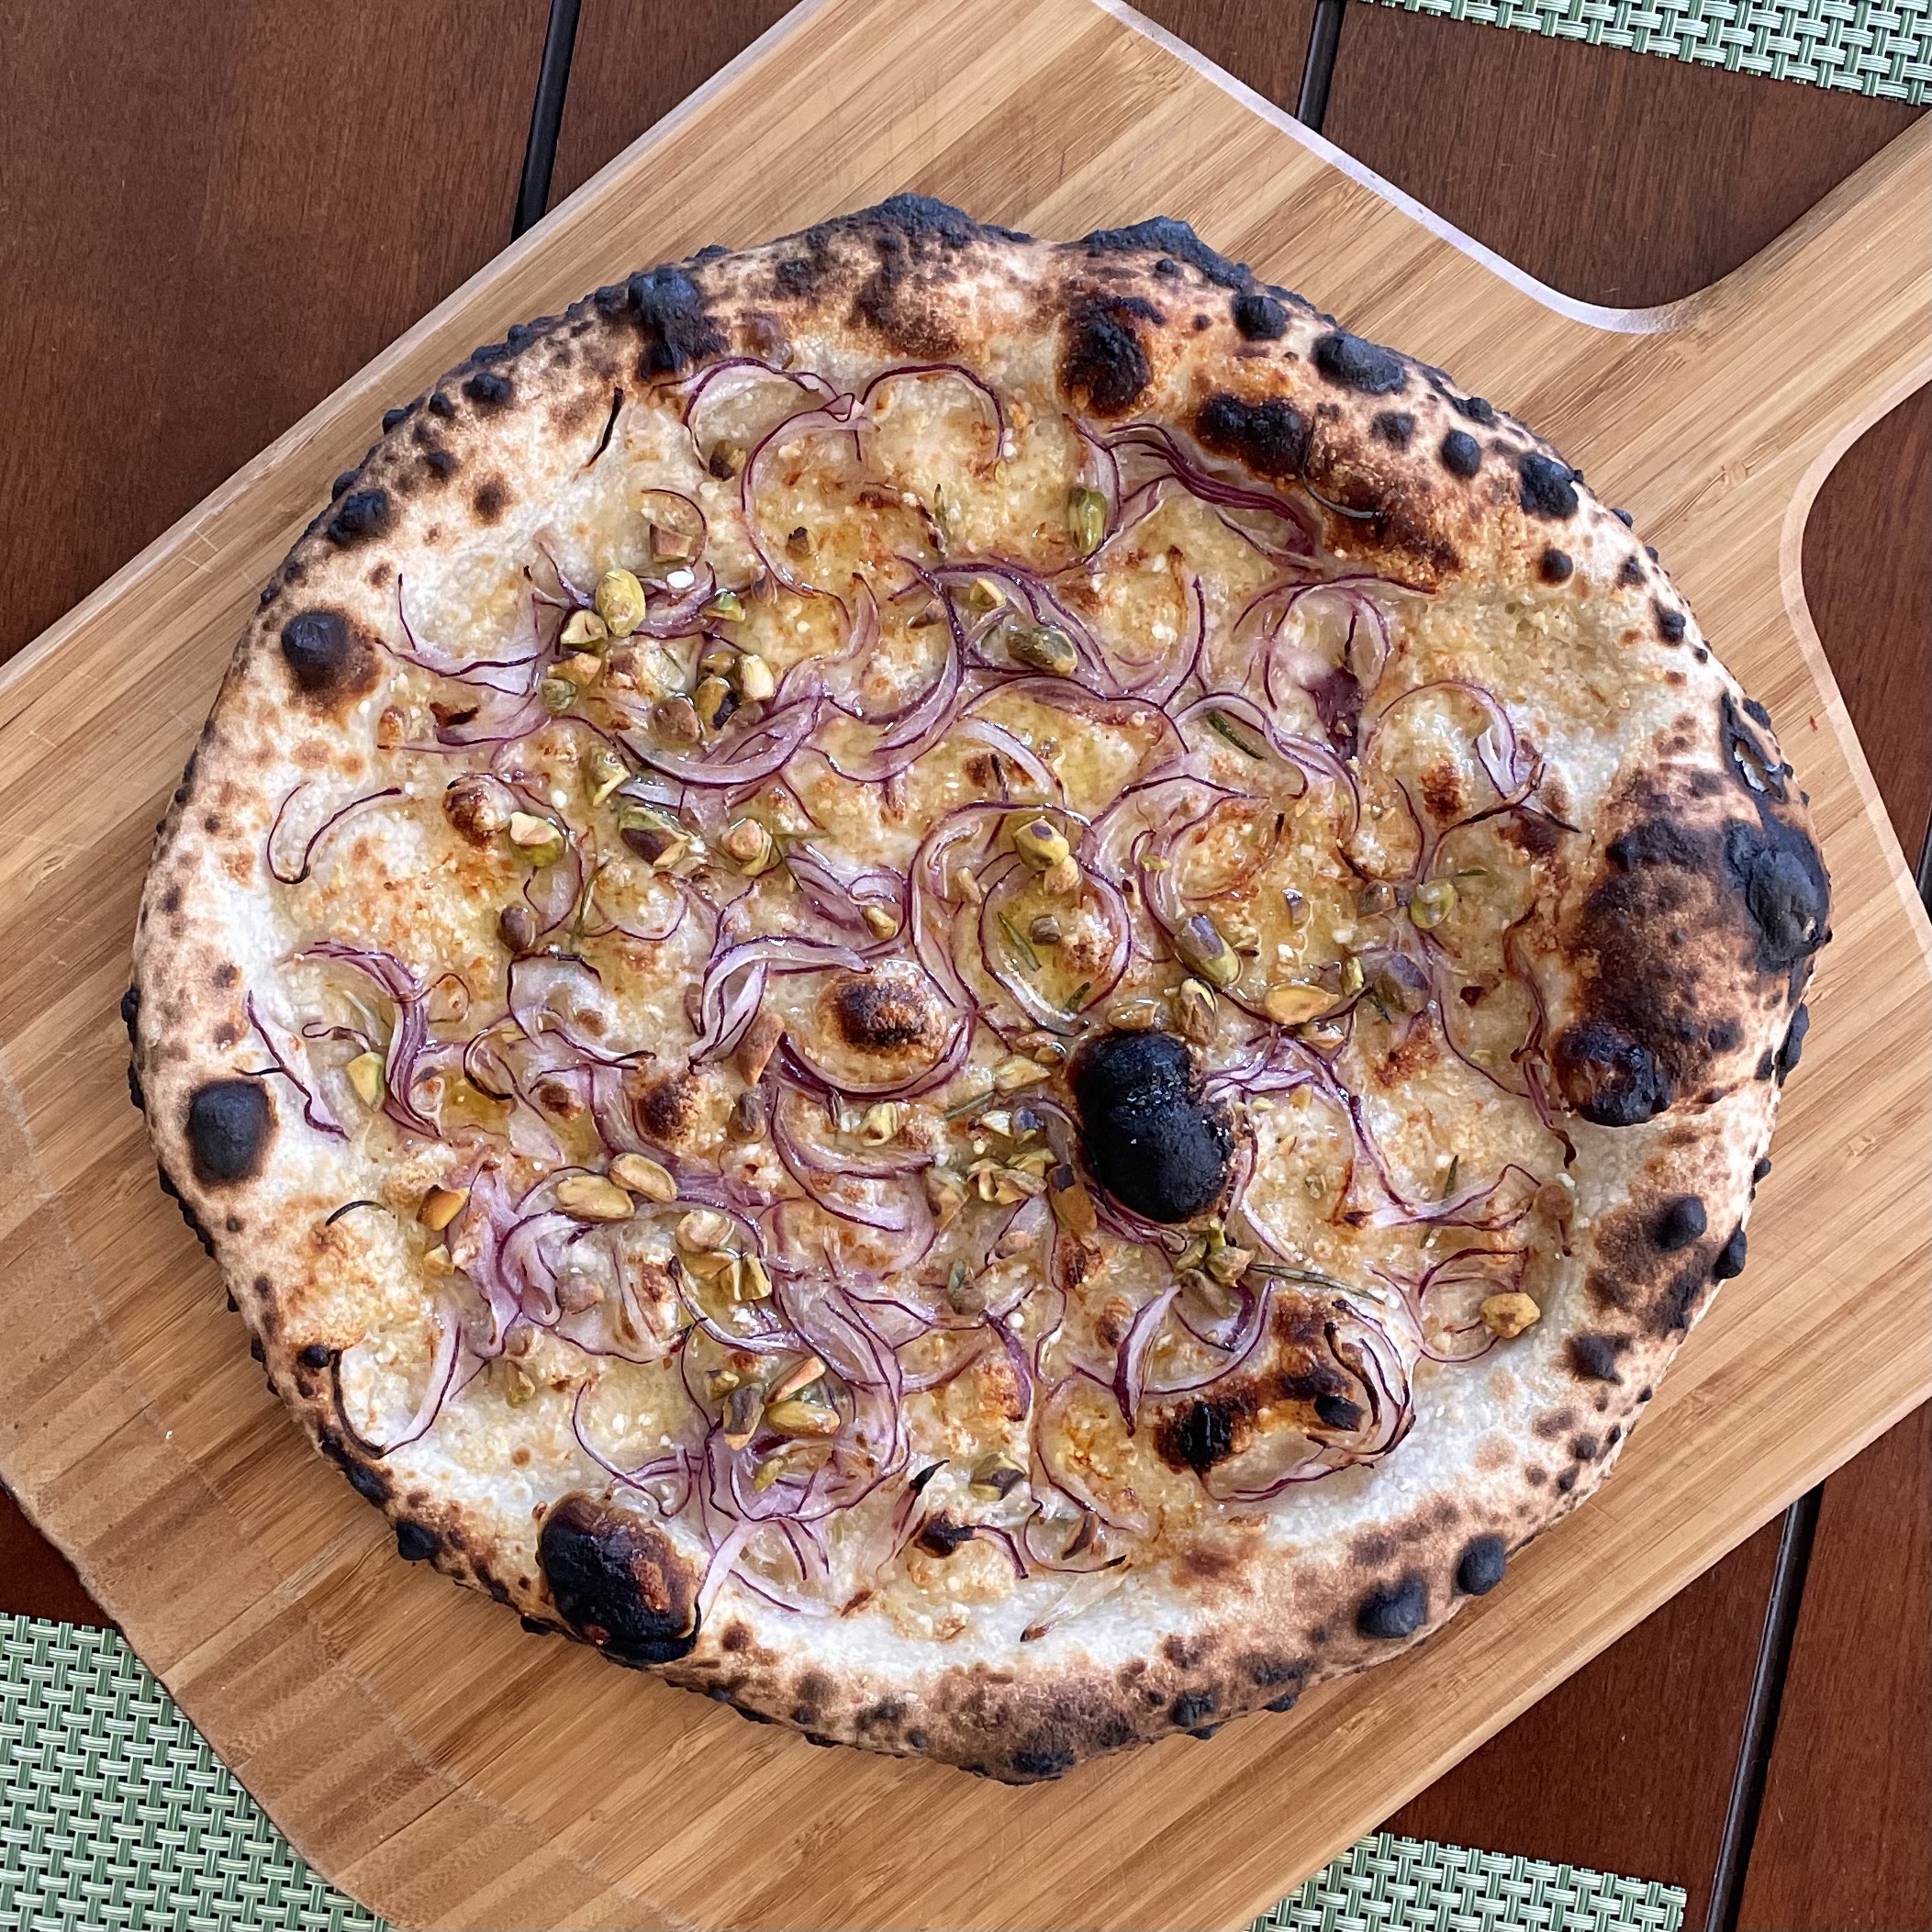 Chris Bianco's Pizza the Ooni Pizza Oven – Santa Barbara Baker